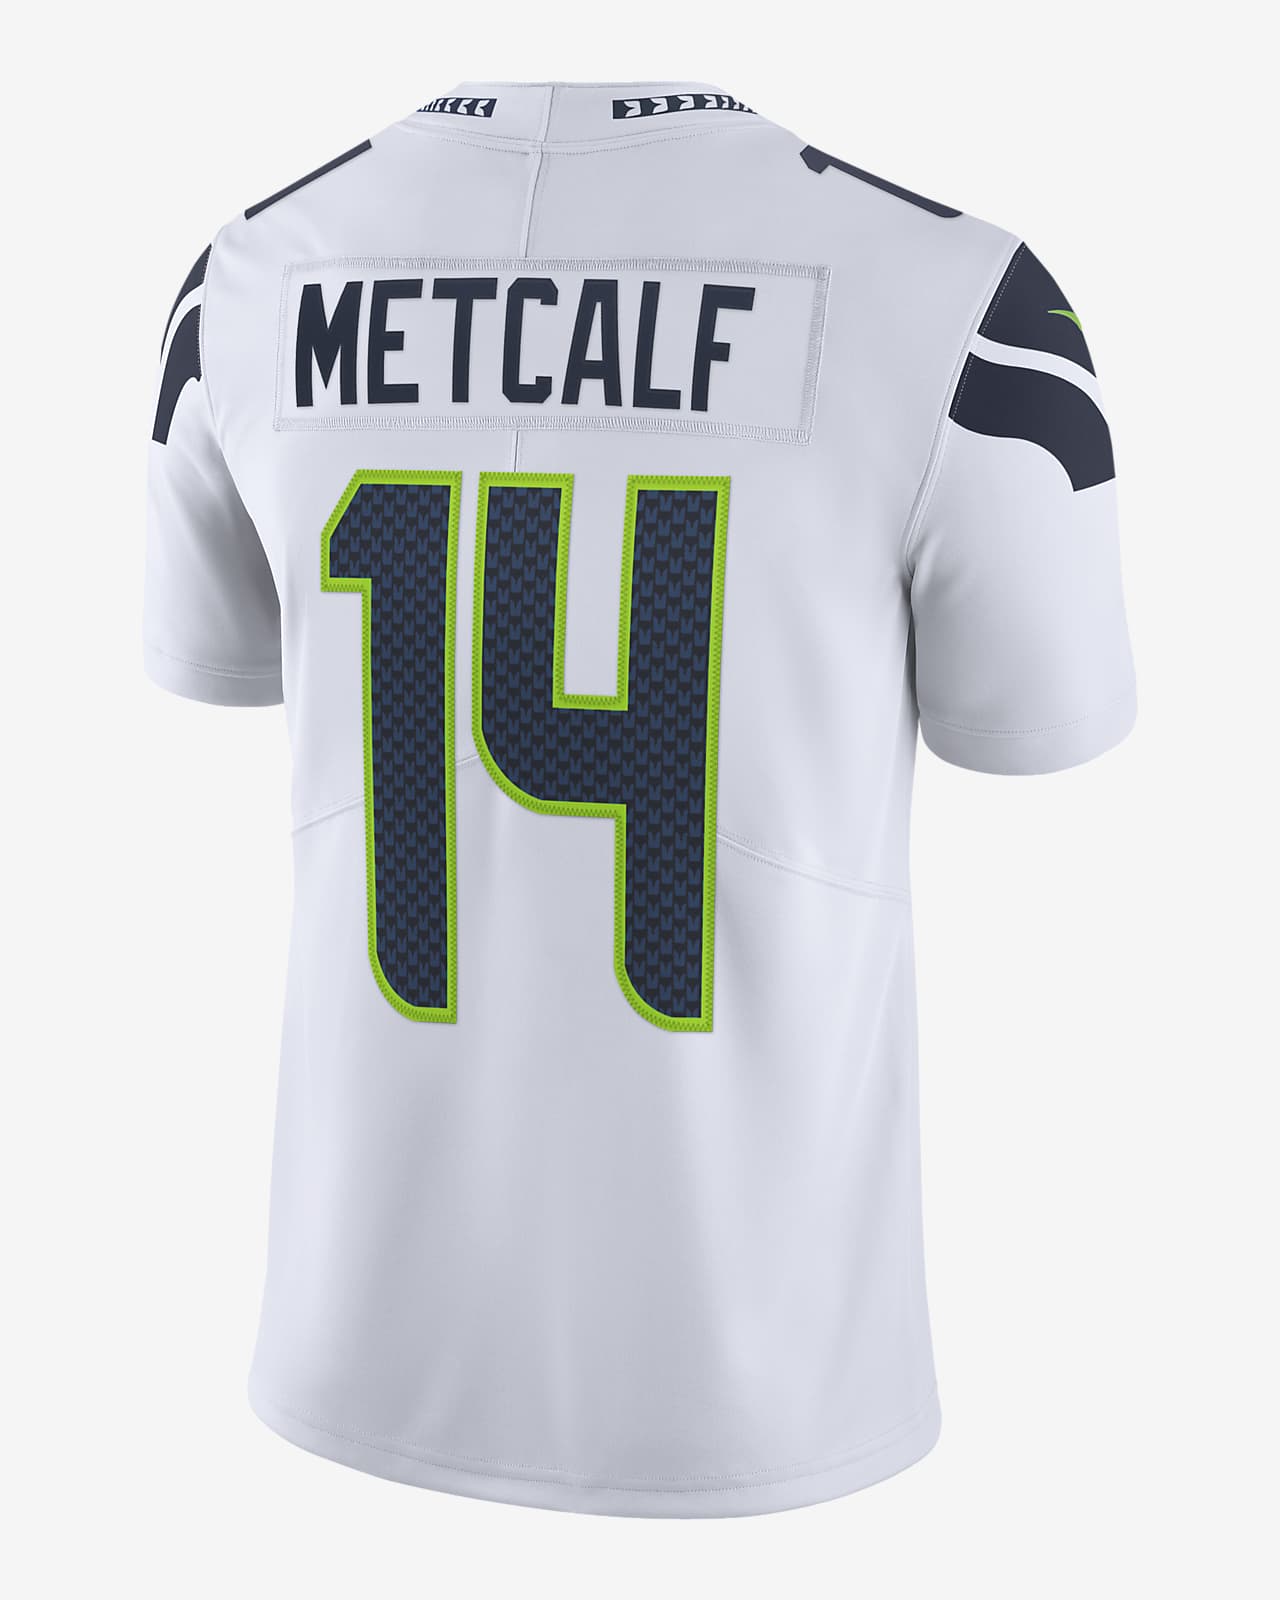 Jersey de fútbol americano edición limitada para hombre NFL Seahawks Nike Vapor Untouchable (DK Metcalf). Nike.com